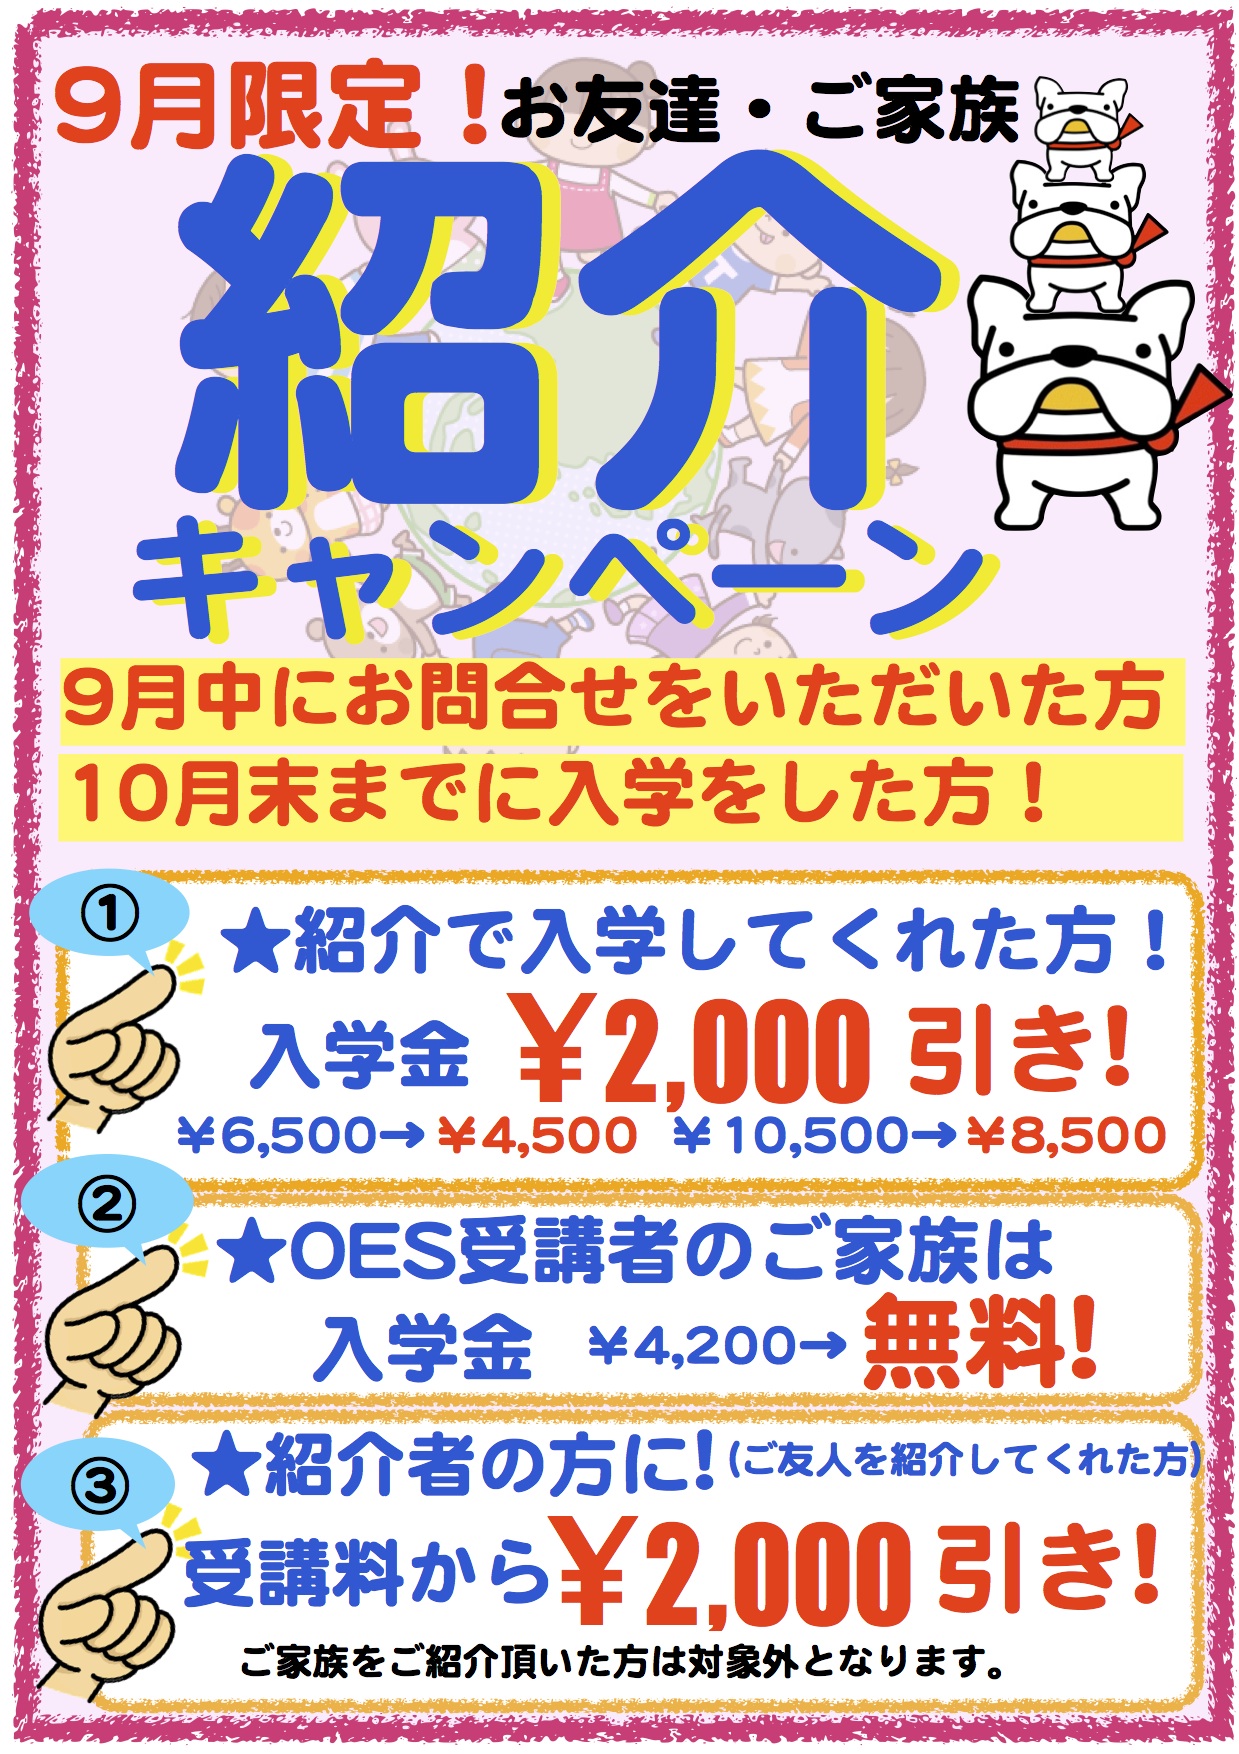 紹介入学キャンペーン ポスター 2014年9月 のコピー